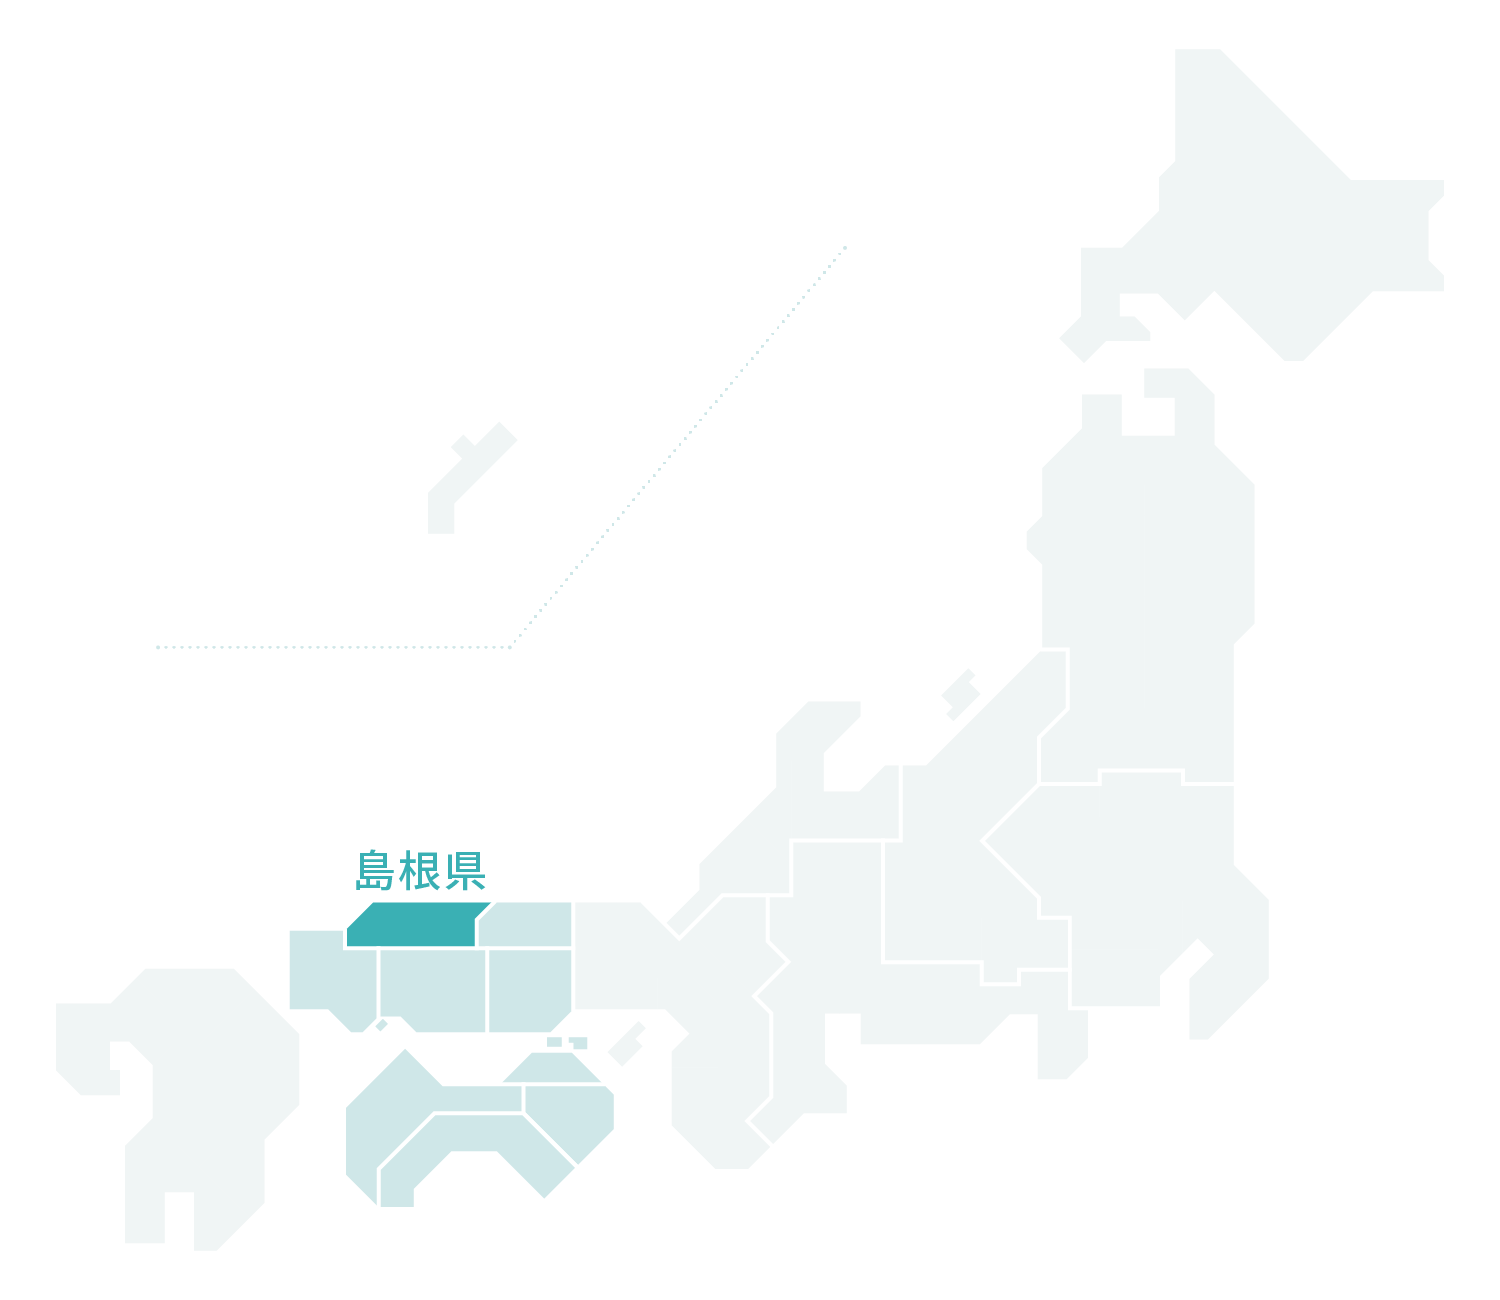 島根県マップ